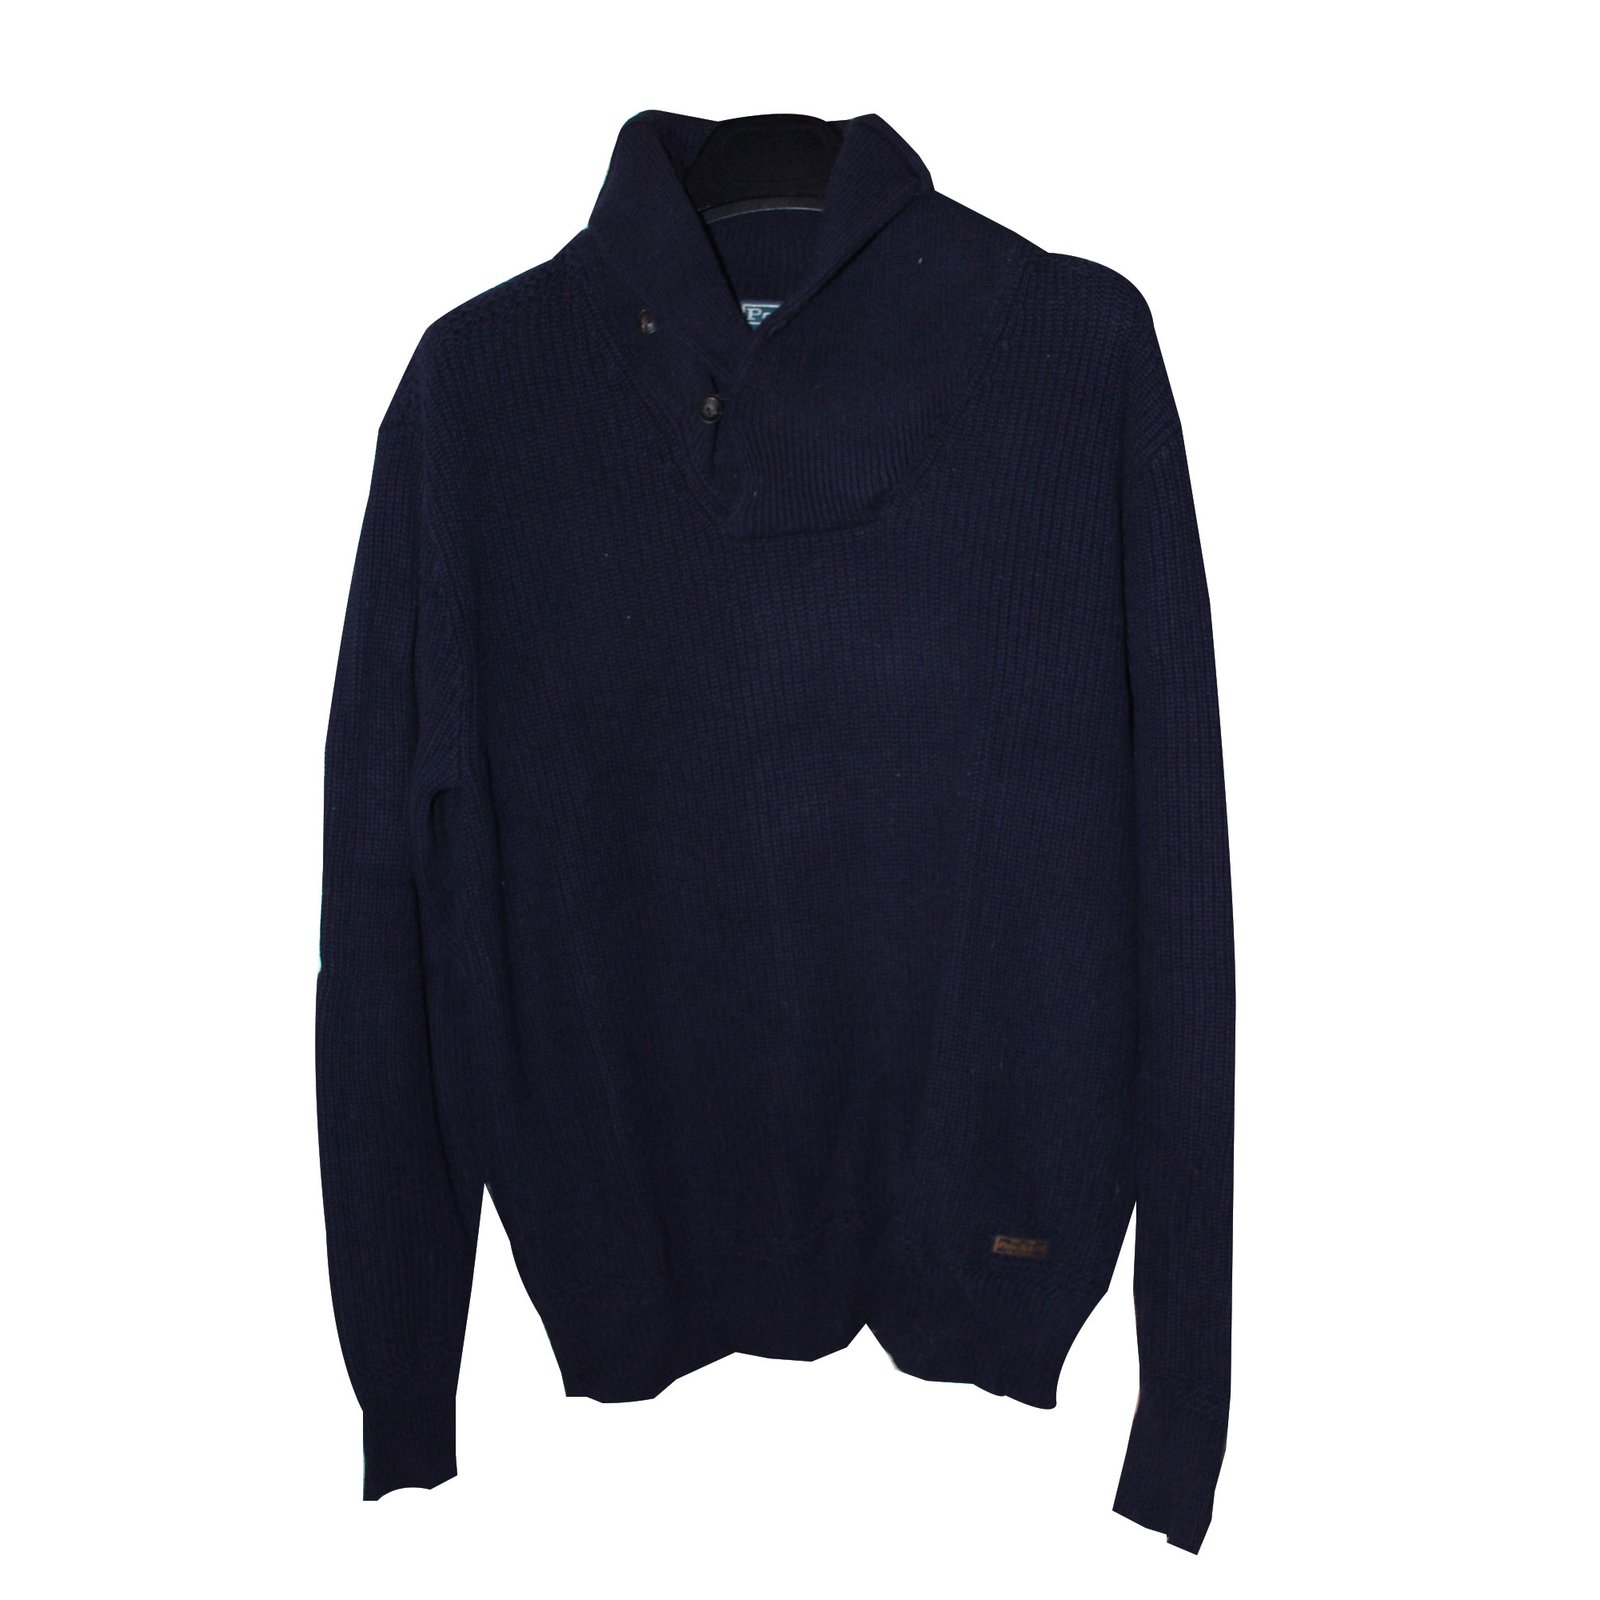 Buy > navy blue ralph lauren sweater > in stock